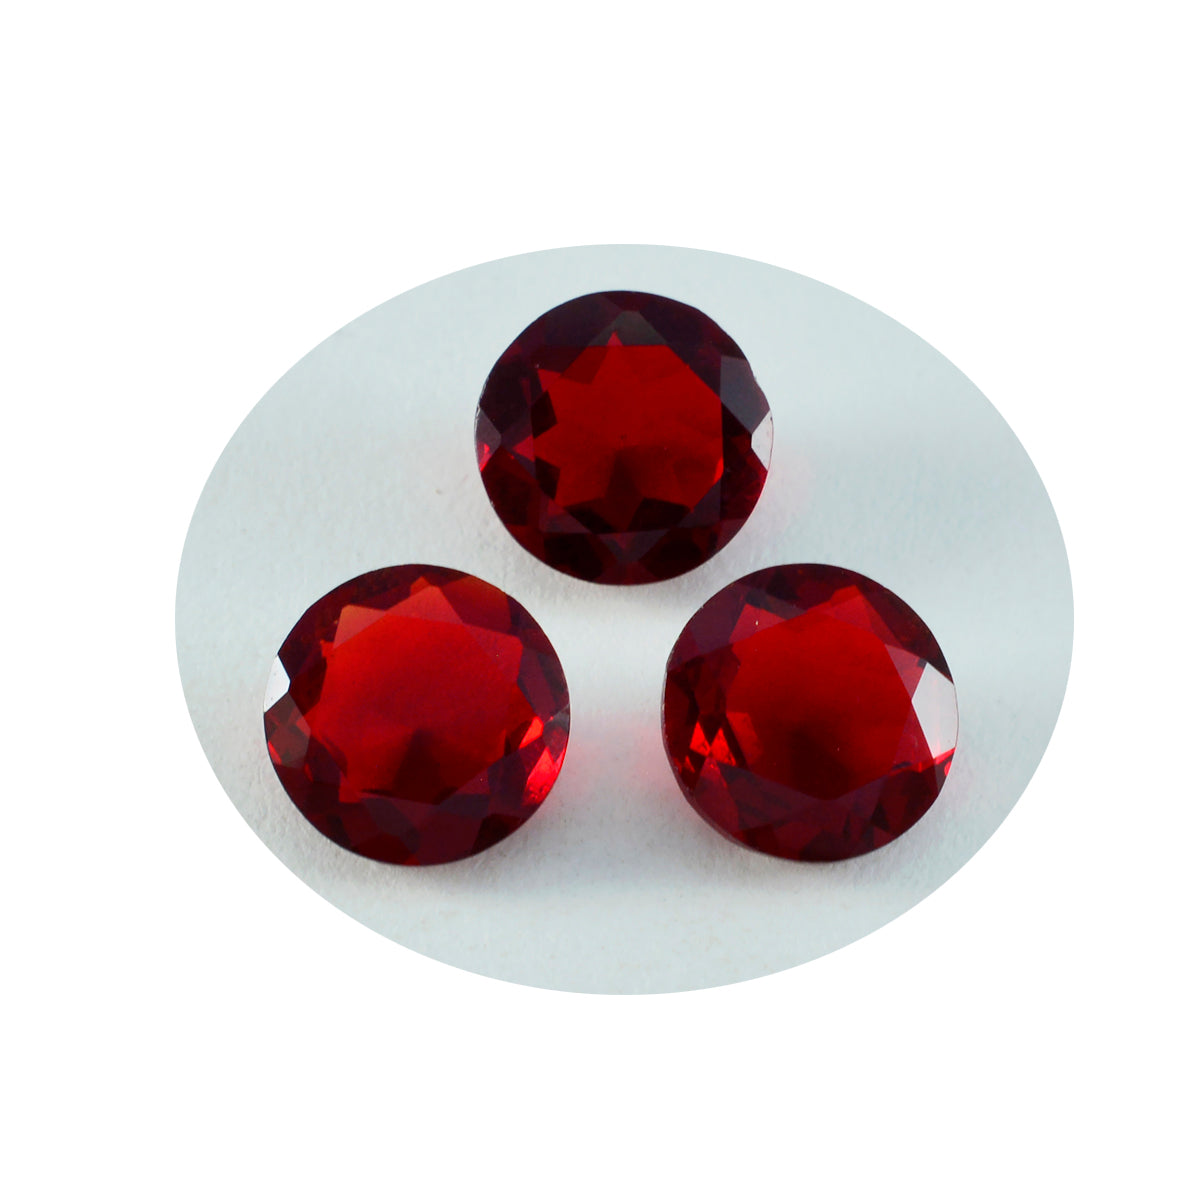 Riyogems 1 Stück roter Rubin mit CZ, facettiert, 13 x 13 mm, runde Form, schöner Qualitäts-Edelstein